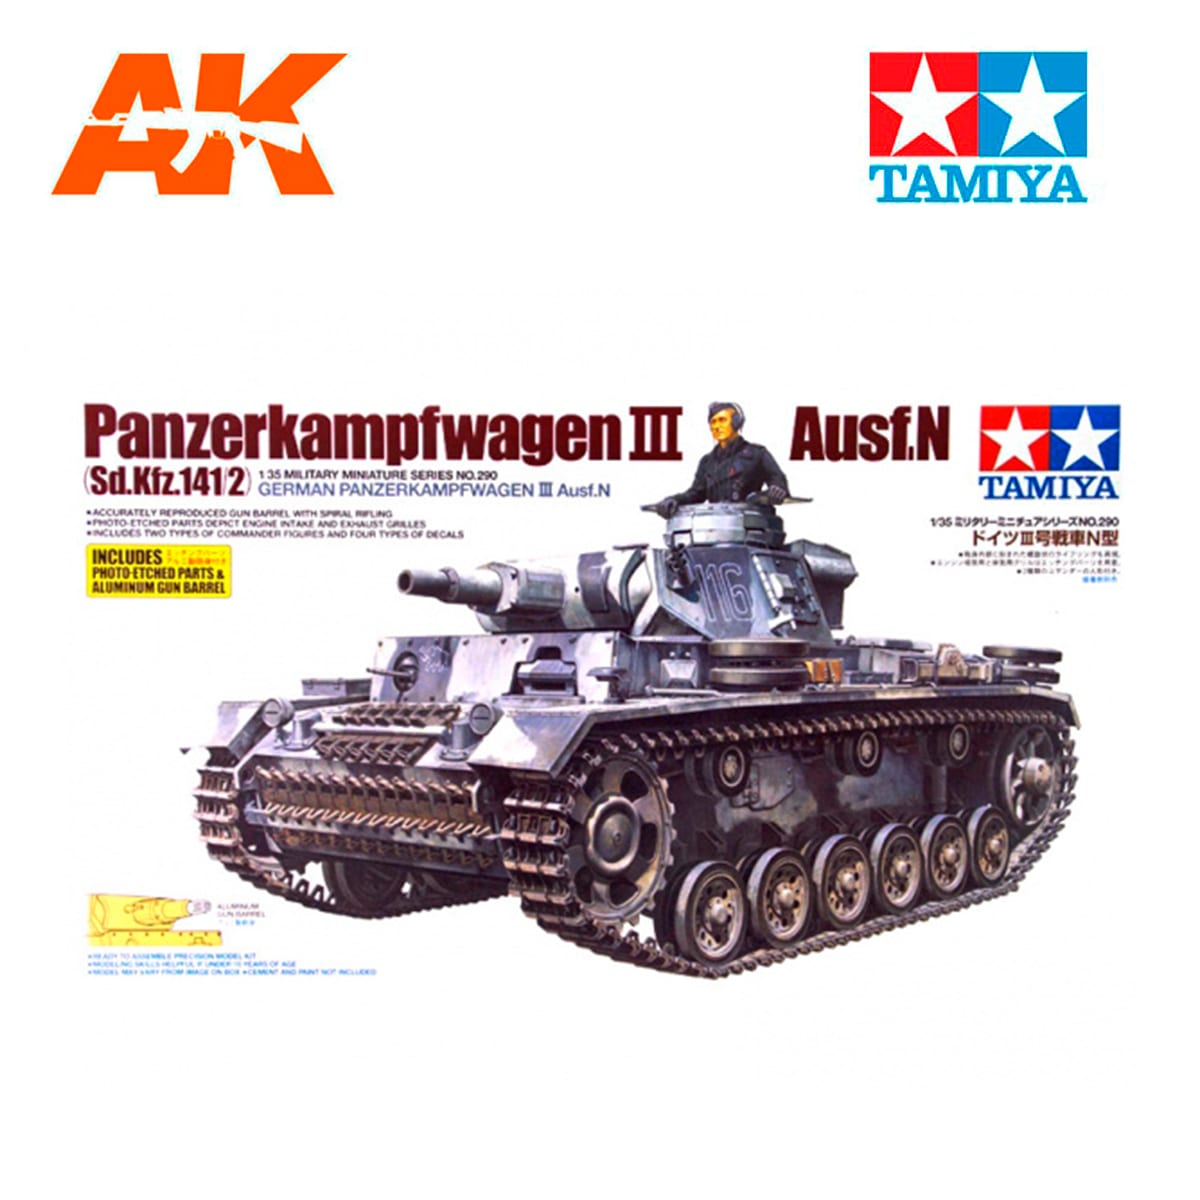 1/35 Pz.Kpfw.III Ausf.N